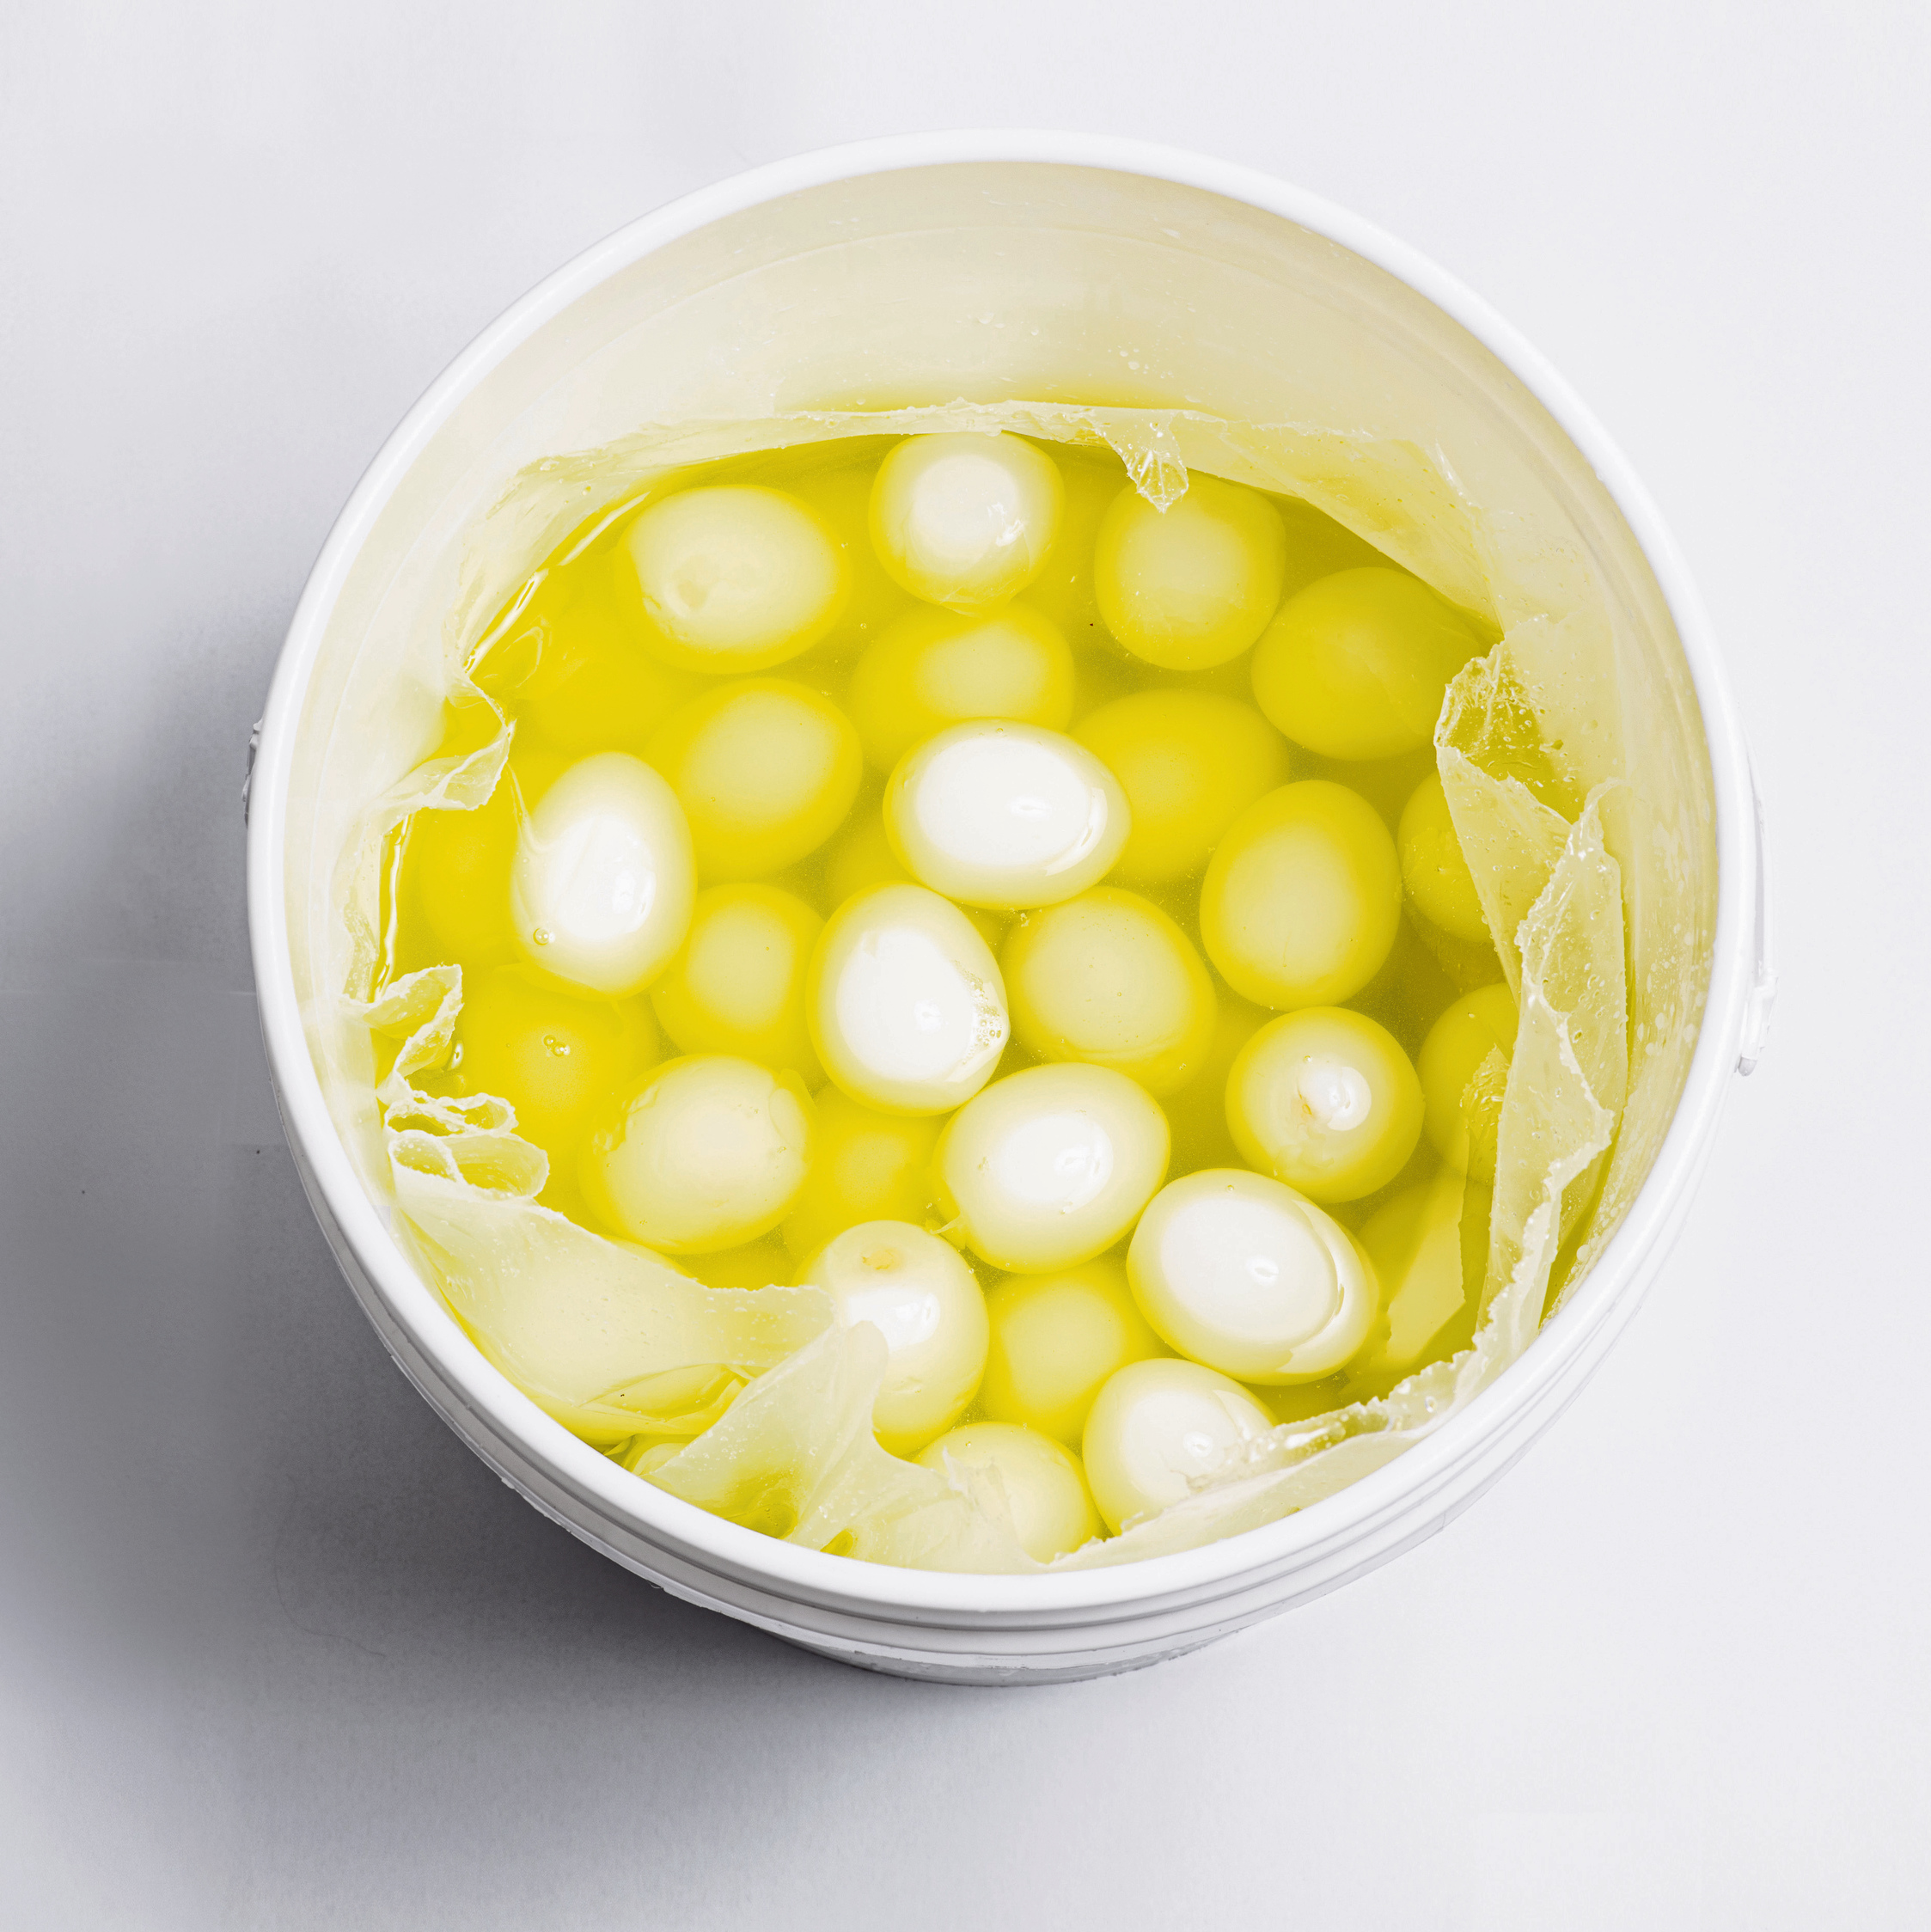 ביצים משומרות בדרך לכריך שלכם. טכנולוג המזון שמואל קיש: "'טרי' זו הגדרה כללית מאוד. אם את רוצה טבעי ב־ 100 אחוז, תגדלי בעצמך | צילום: יובל חן